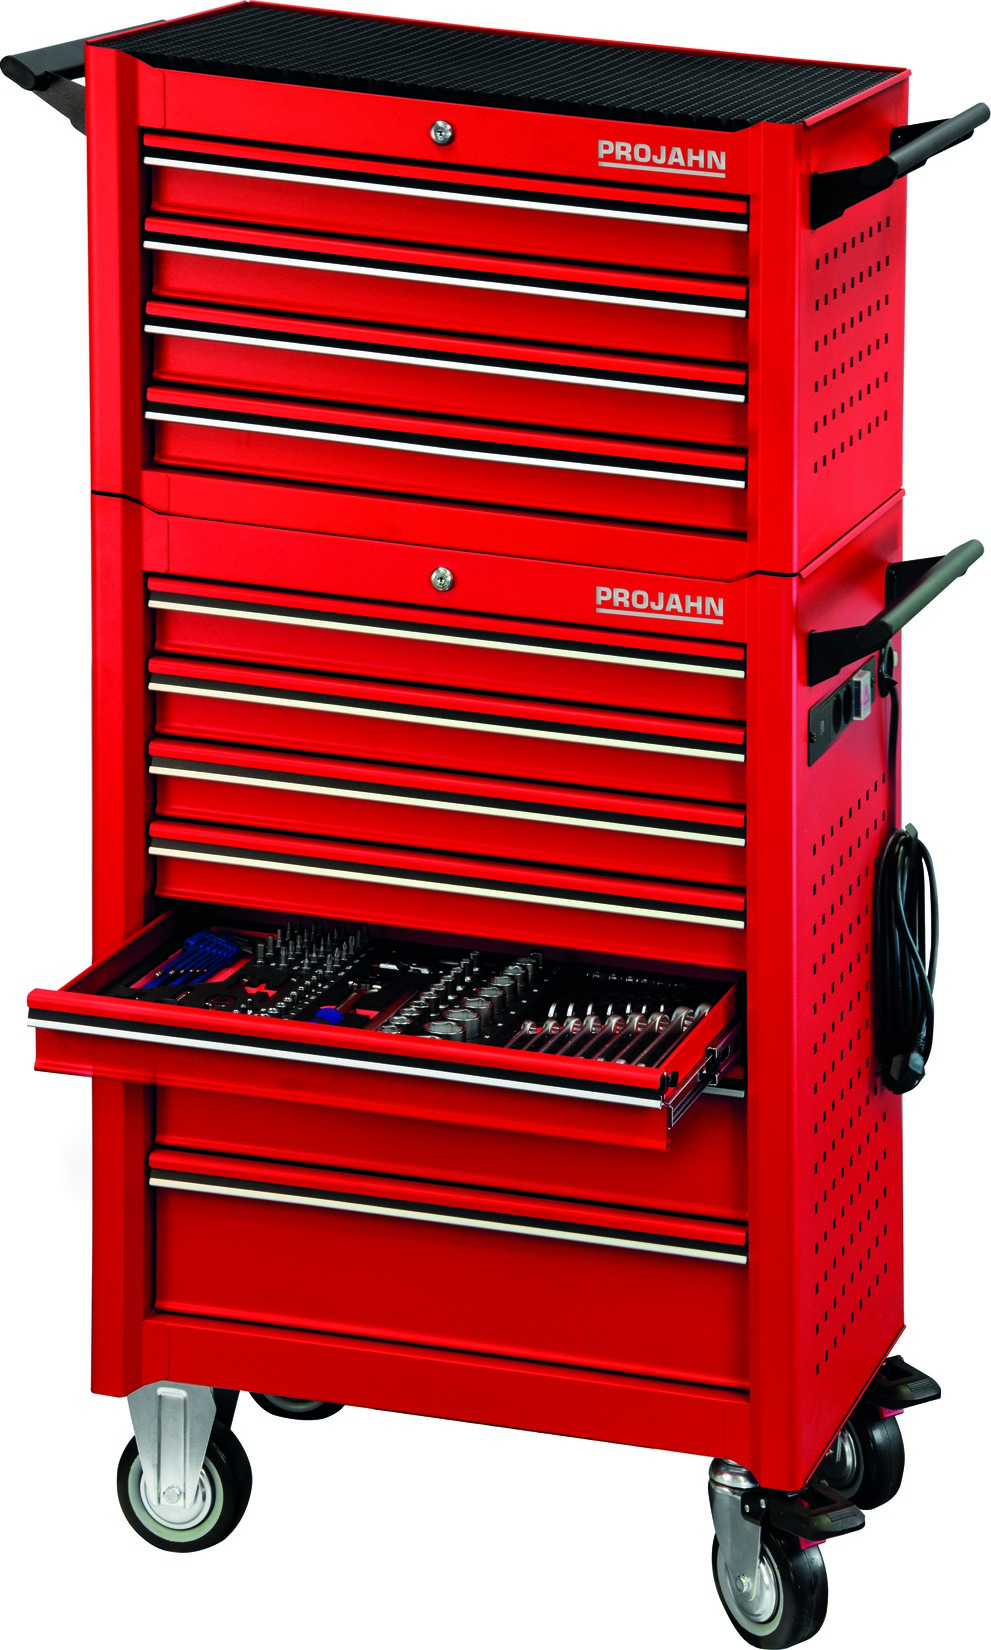 Projahn Bestückter Werkstattwagen UNIVERSE + E-Power Elektroverteiler + Werkstattwagenaufsatz UNIVERSE + Dosenhalter + Papierrollenhalter + 379-tlg. Rot